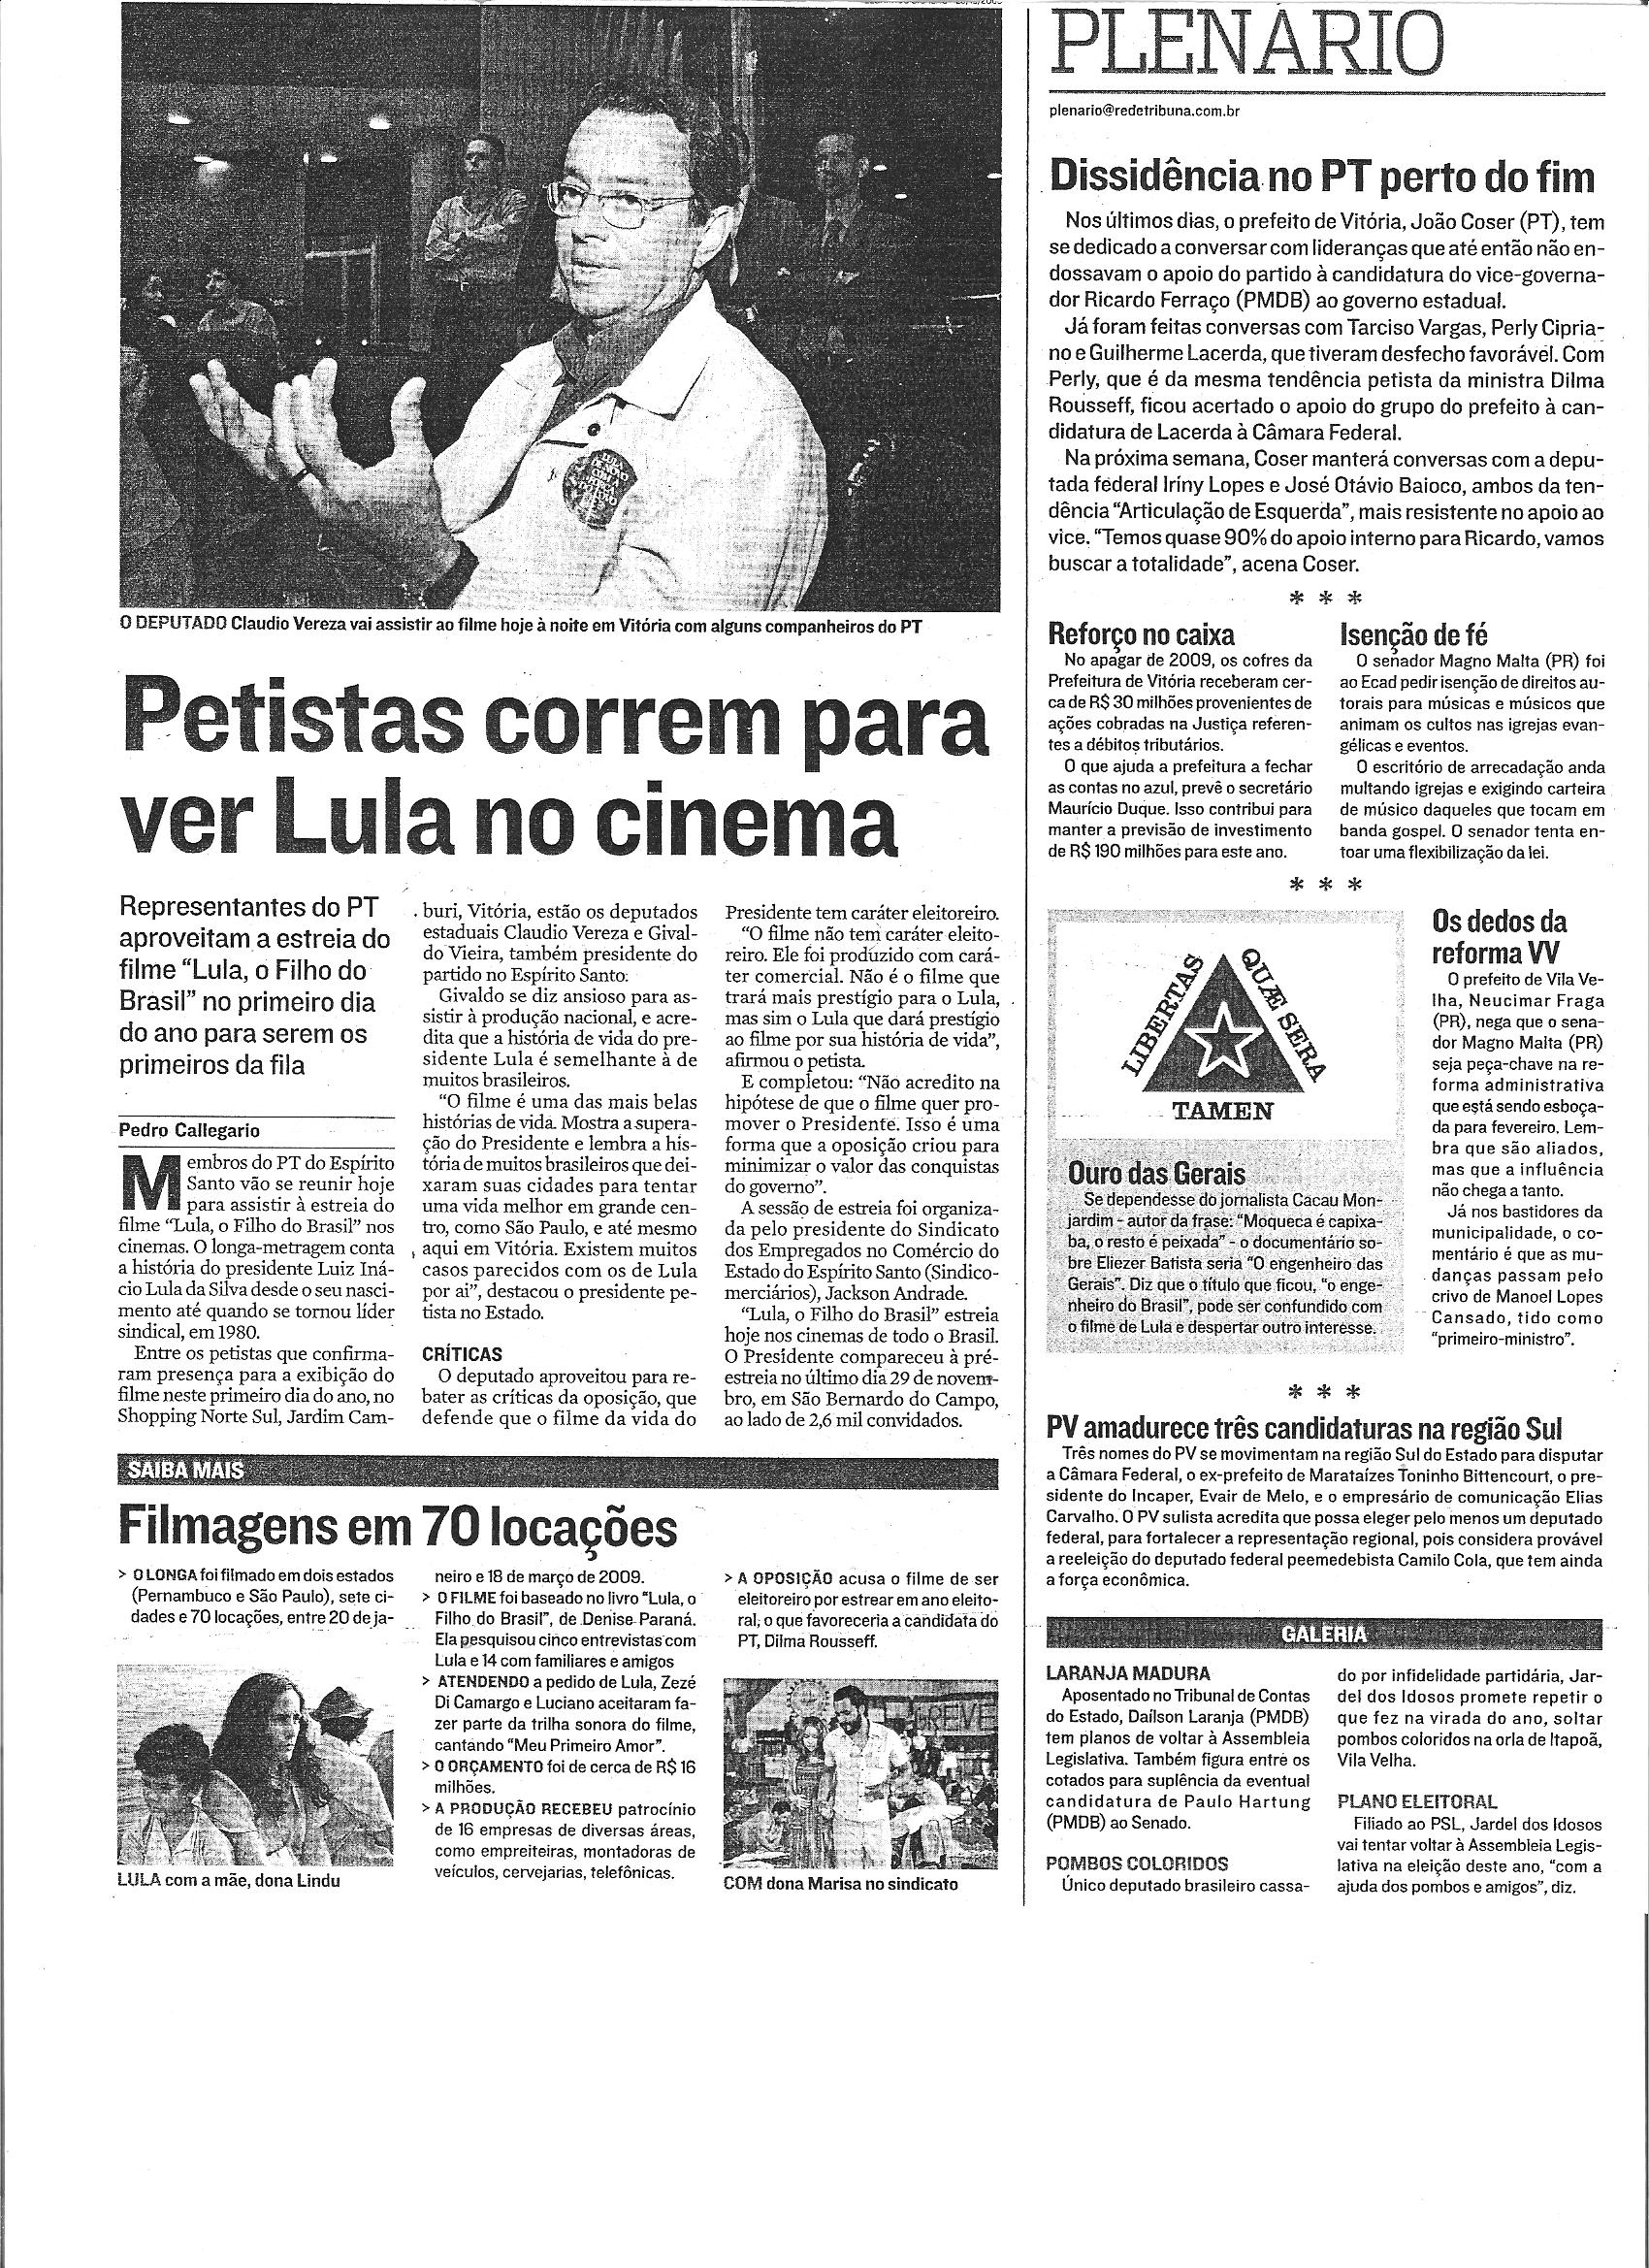 Petistas correm para ver Lula no cinema (Plenário)